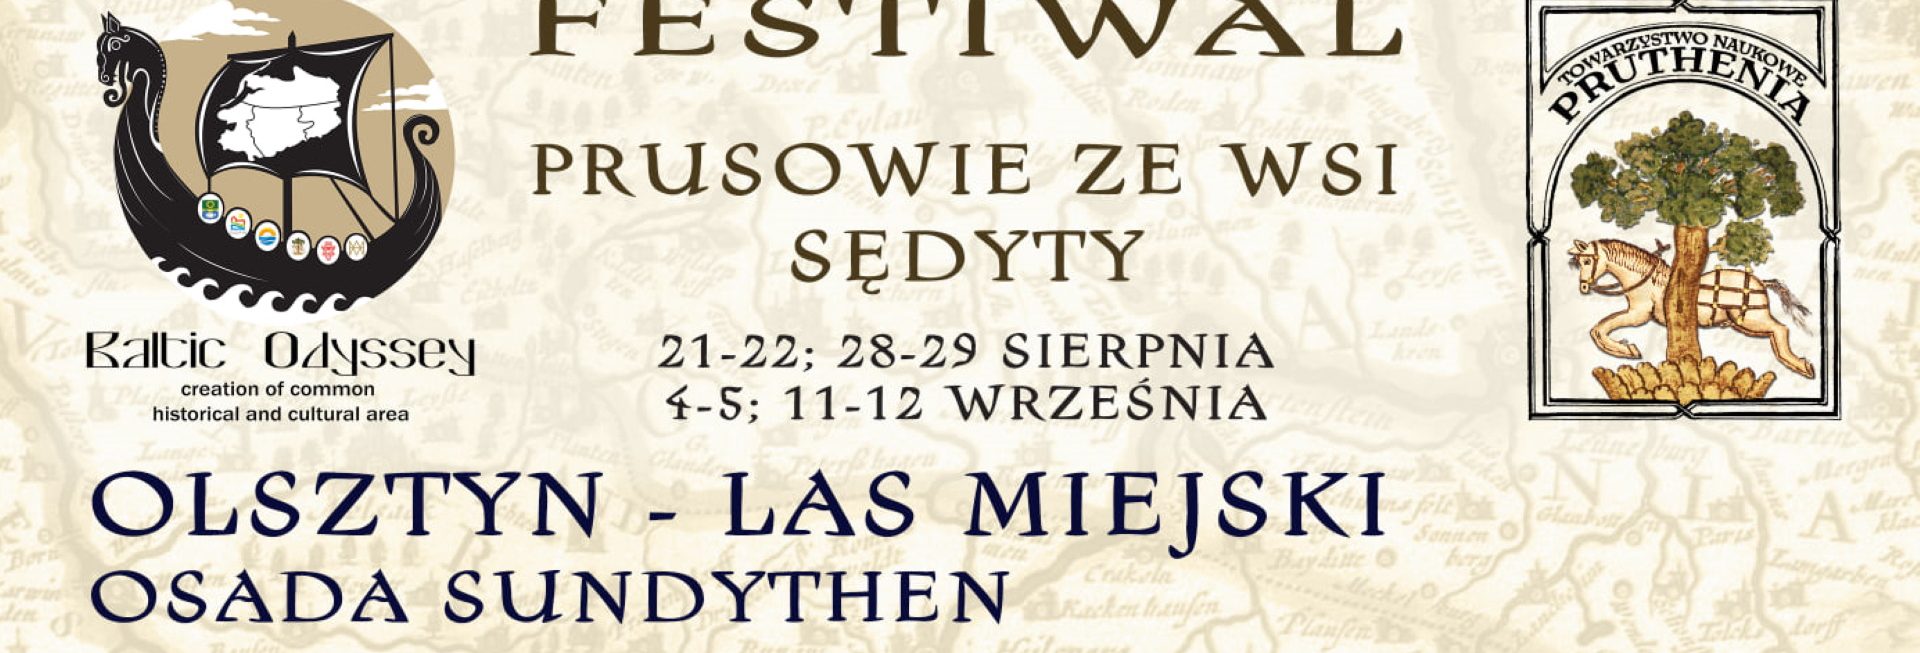 Plakat graficzny zapraszający do Lasu Miejskiego w Olsztynie na Festiwal Prusowie ze wsi Sędyty - Olsztyn Las Miejski 2021. Na plakacie napisy zapraszające na festiwal.